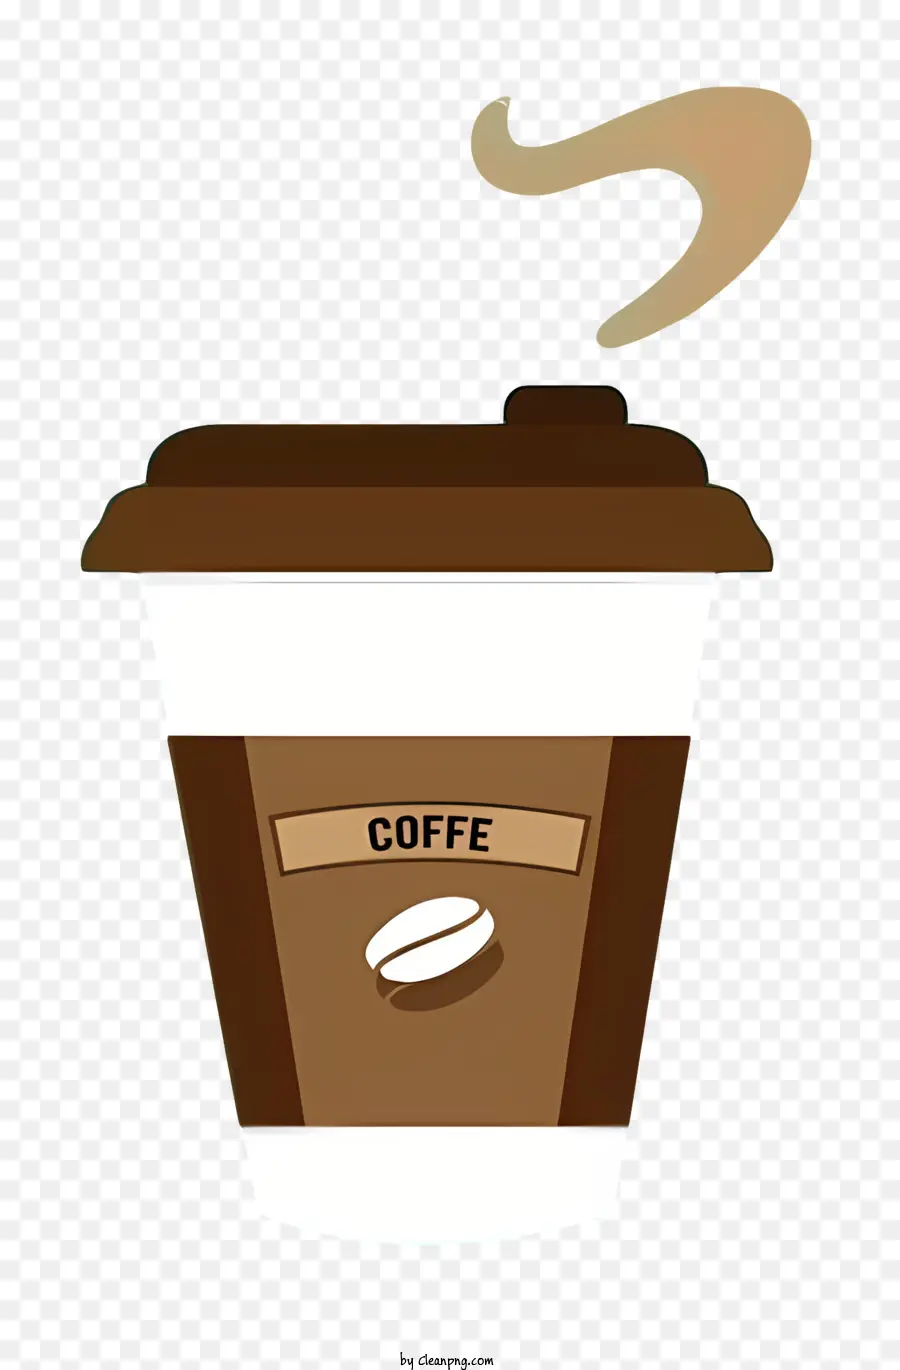 Kaffeetasse - Kaffeetasse mit Dampf, brauner Karton, realistisch